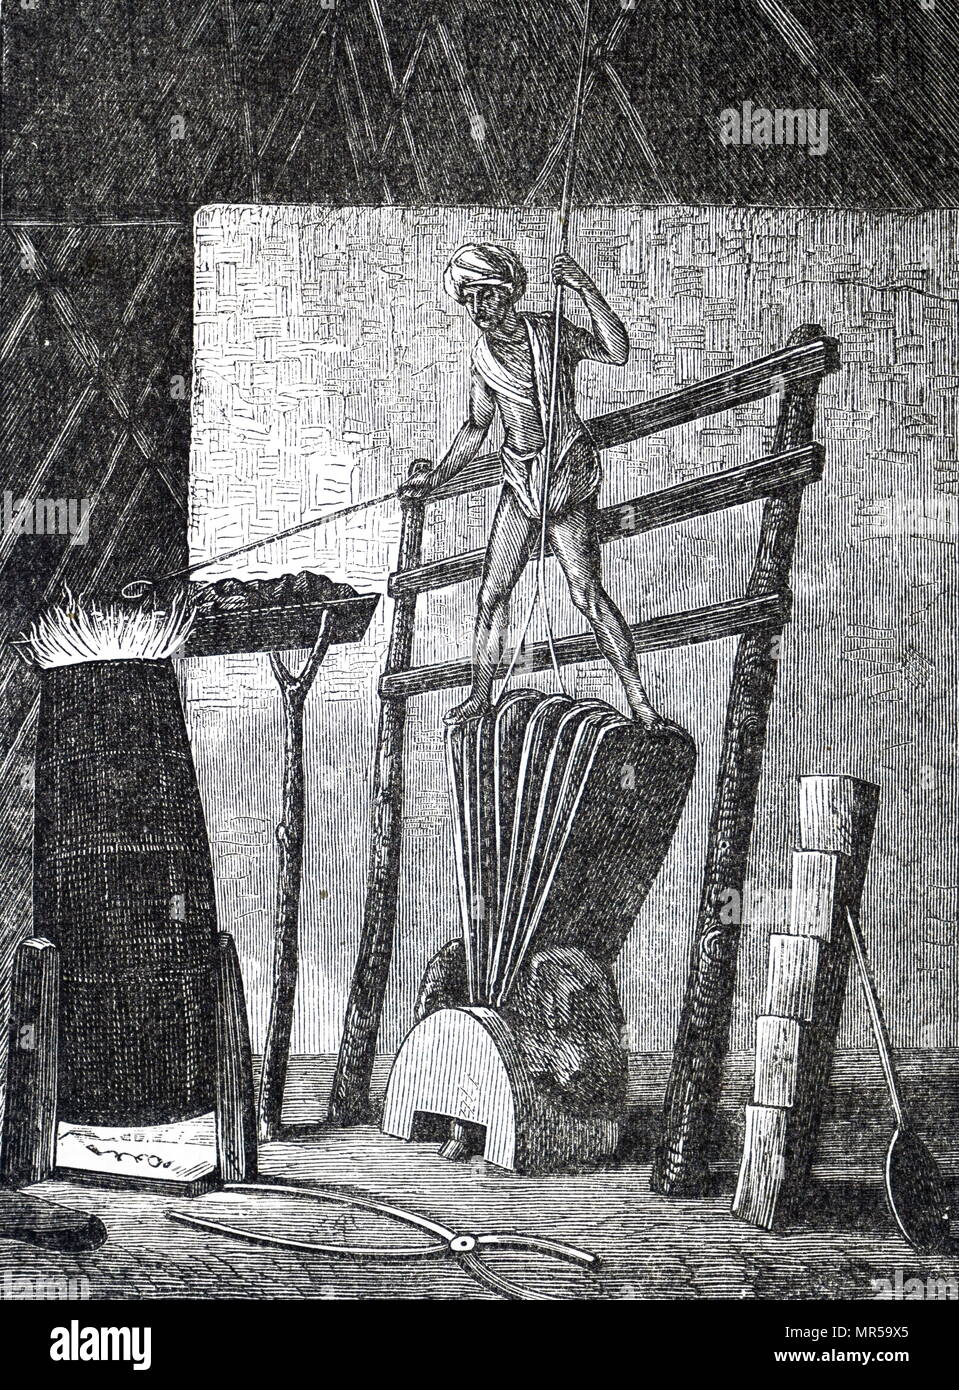 Grabado representando el proceso de fundición de hierro en la India. Fecha del siglo XIX Foto de stock